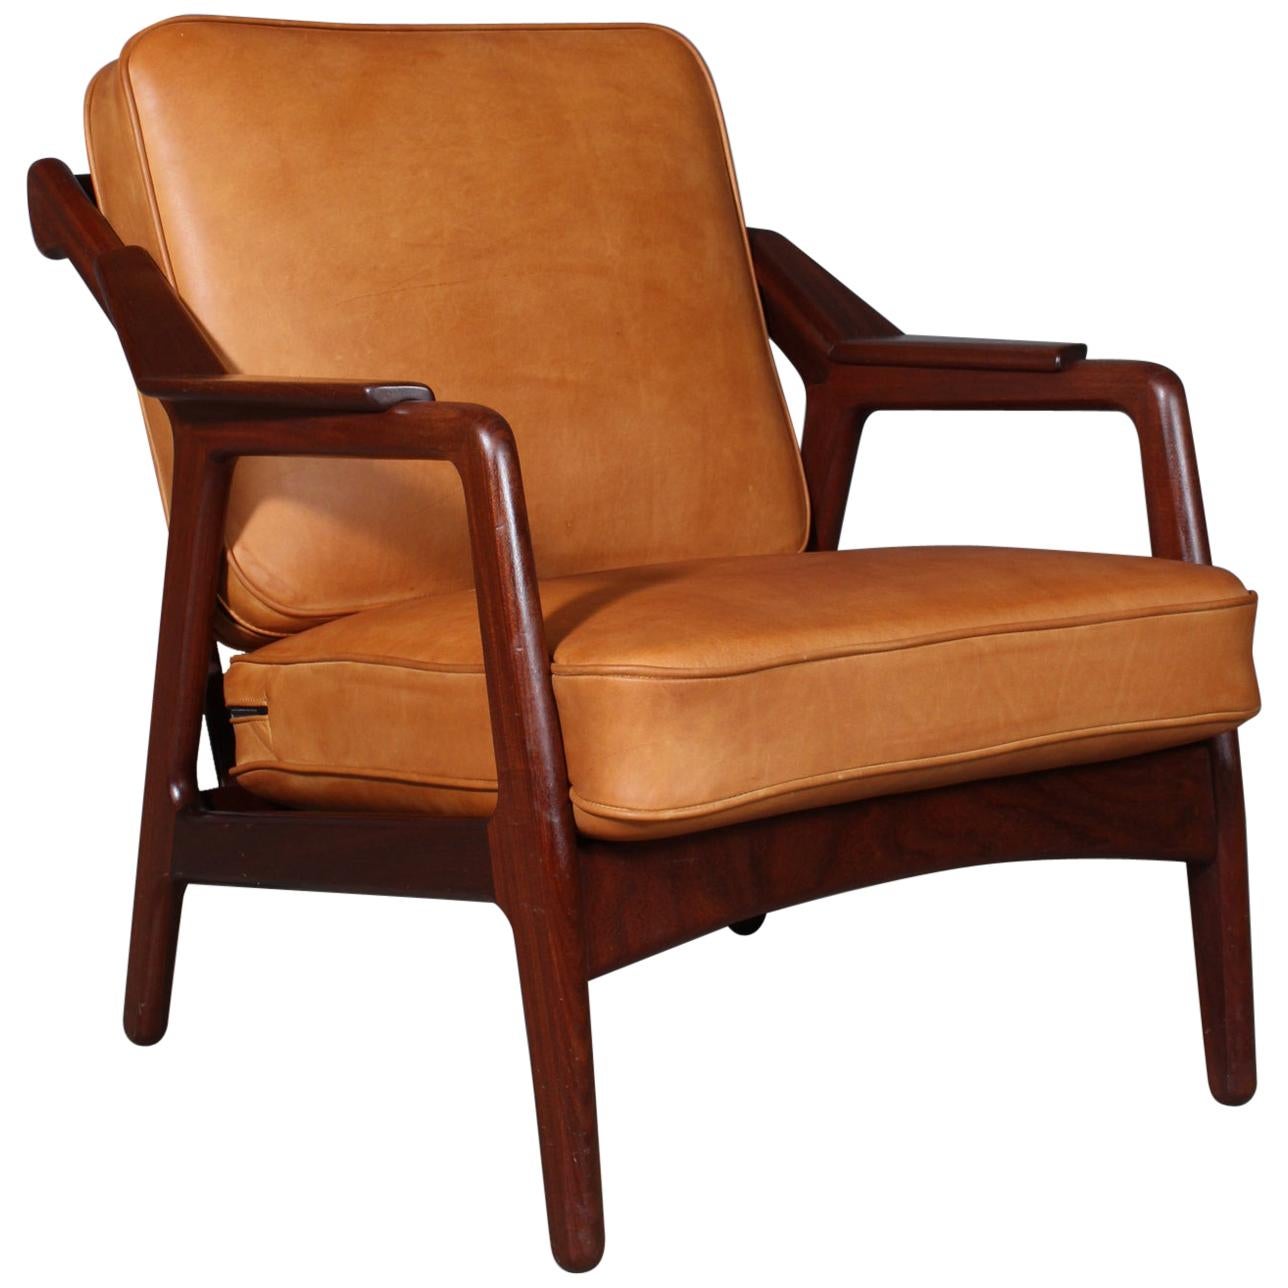 H. Brockmann Petersen Lounge Chair